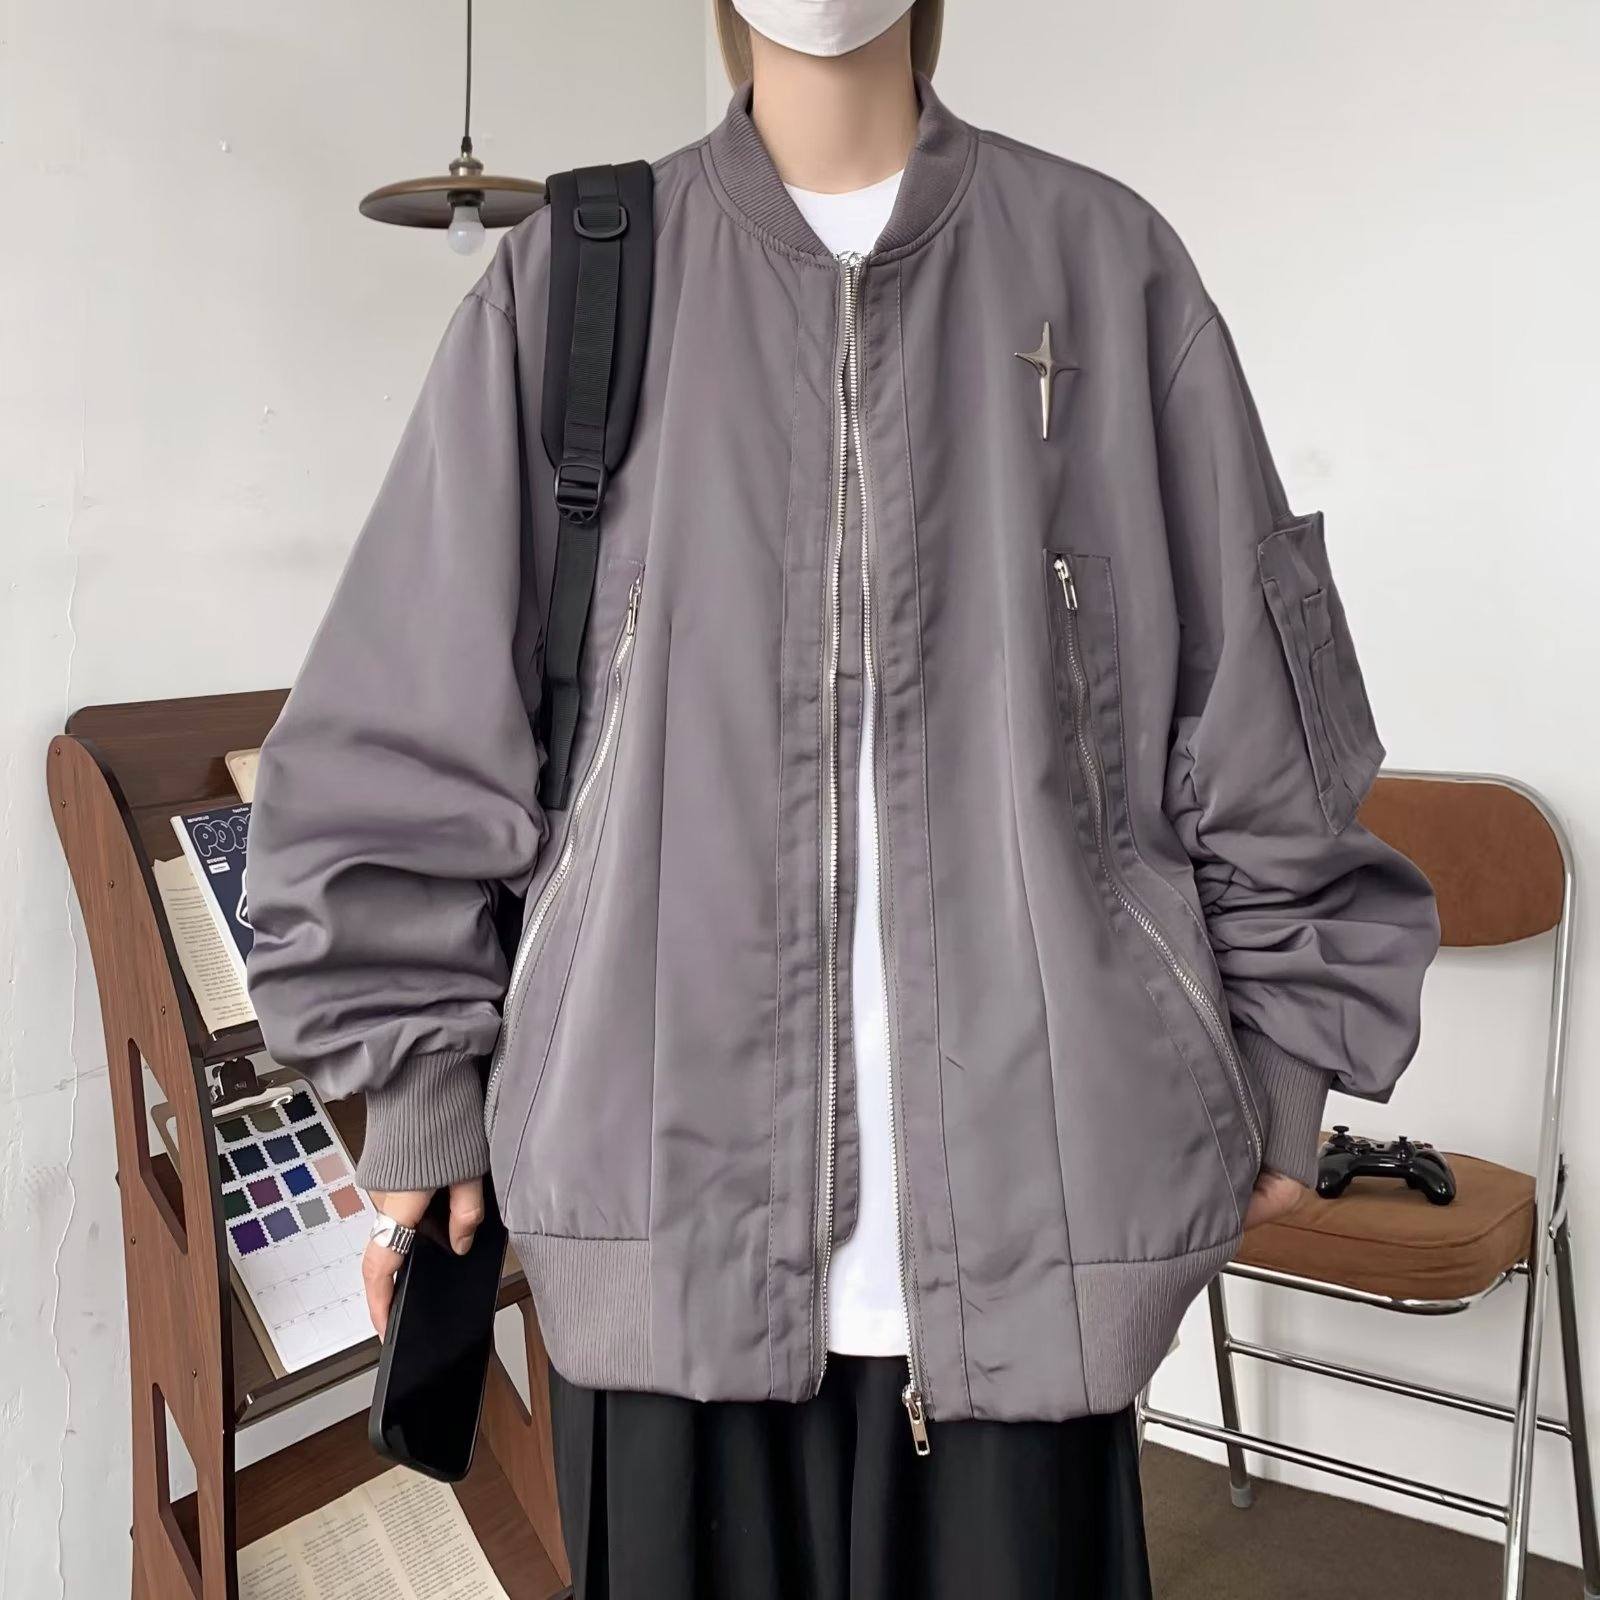 ジャケットファッションカジュアルレトロストリート系韓国ファッション オシャレ 服モードシンプルメンズその他長袖一般一般ラウンドネックジッパーファスナー無地幾何模様